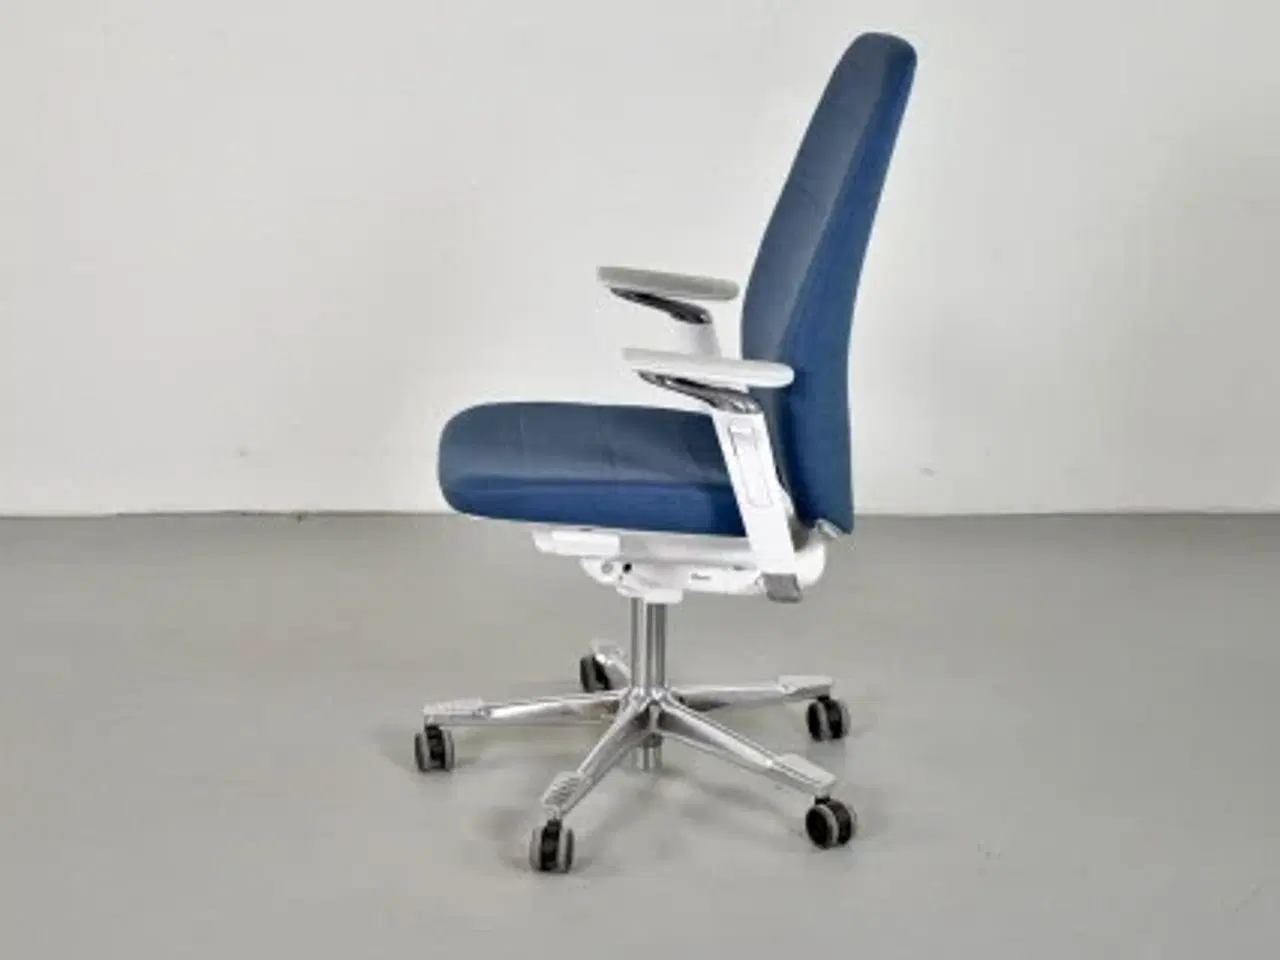 Billede 2 - Kinnarps capella white edition kontorstol med blåt polster og armlæn